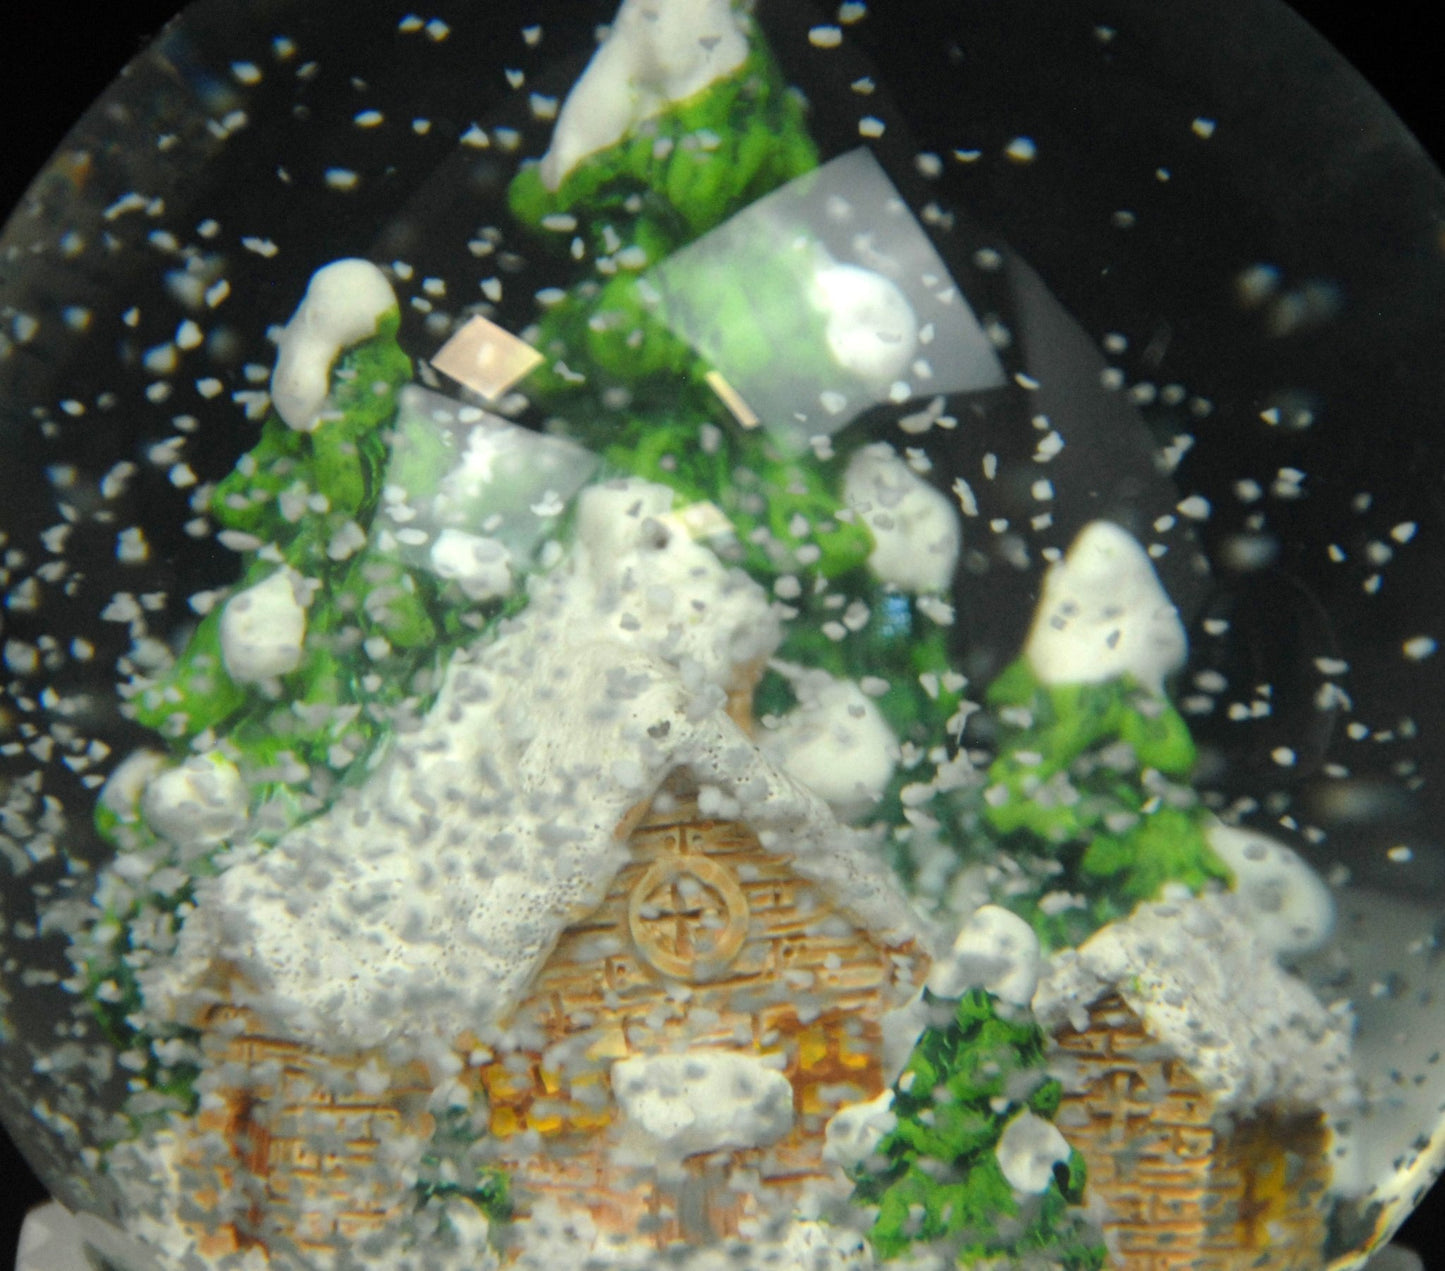 Schneekugel Hüttenzauber auf Silber Sockel Landschaft mit Spieluhr Winter Wonderland 10 cm Durchmesser - Schneekugelhaus